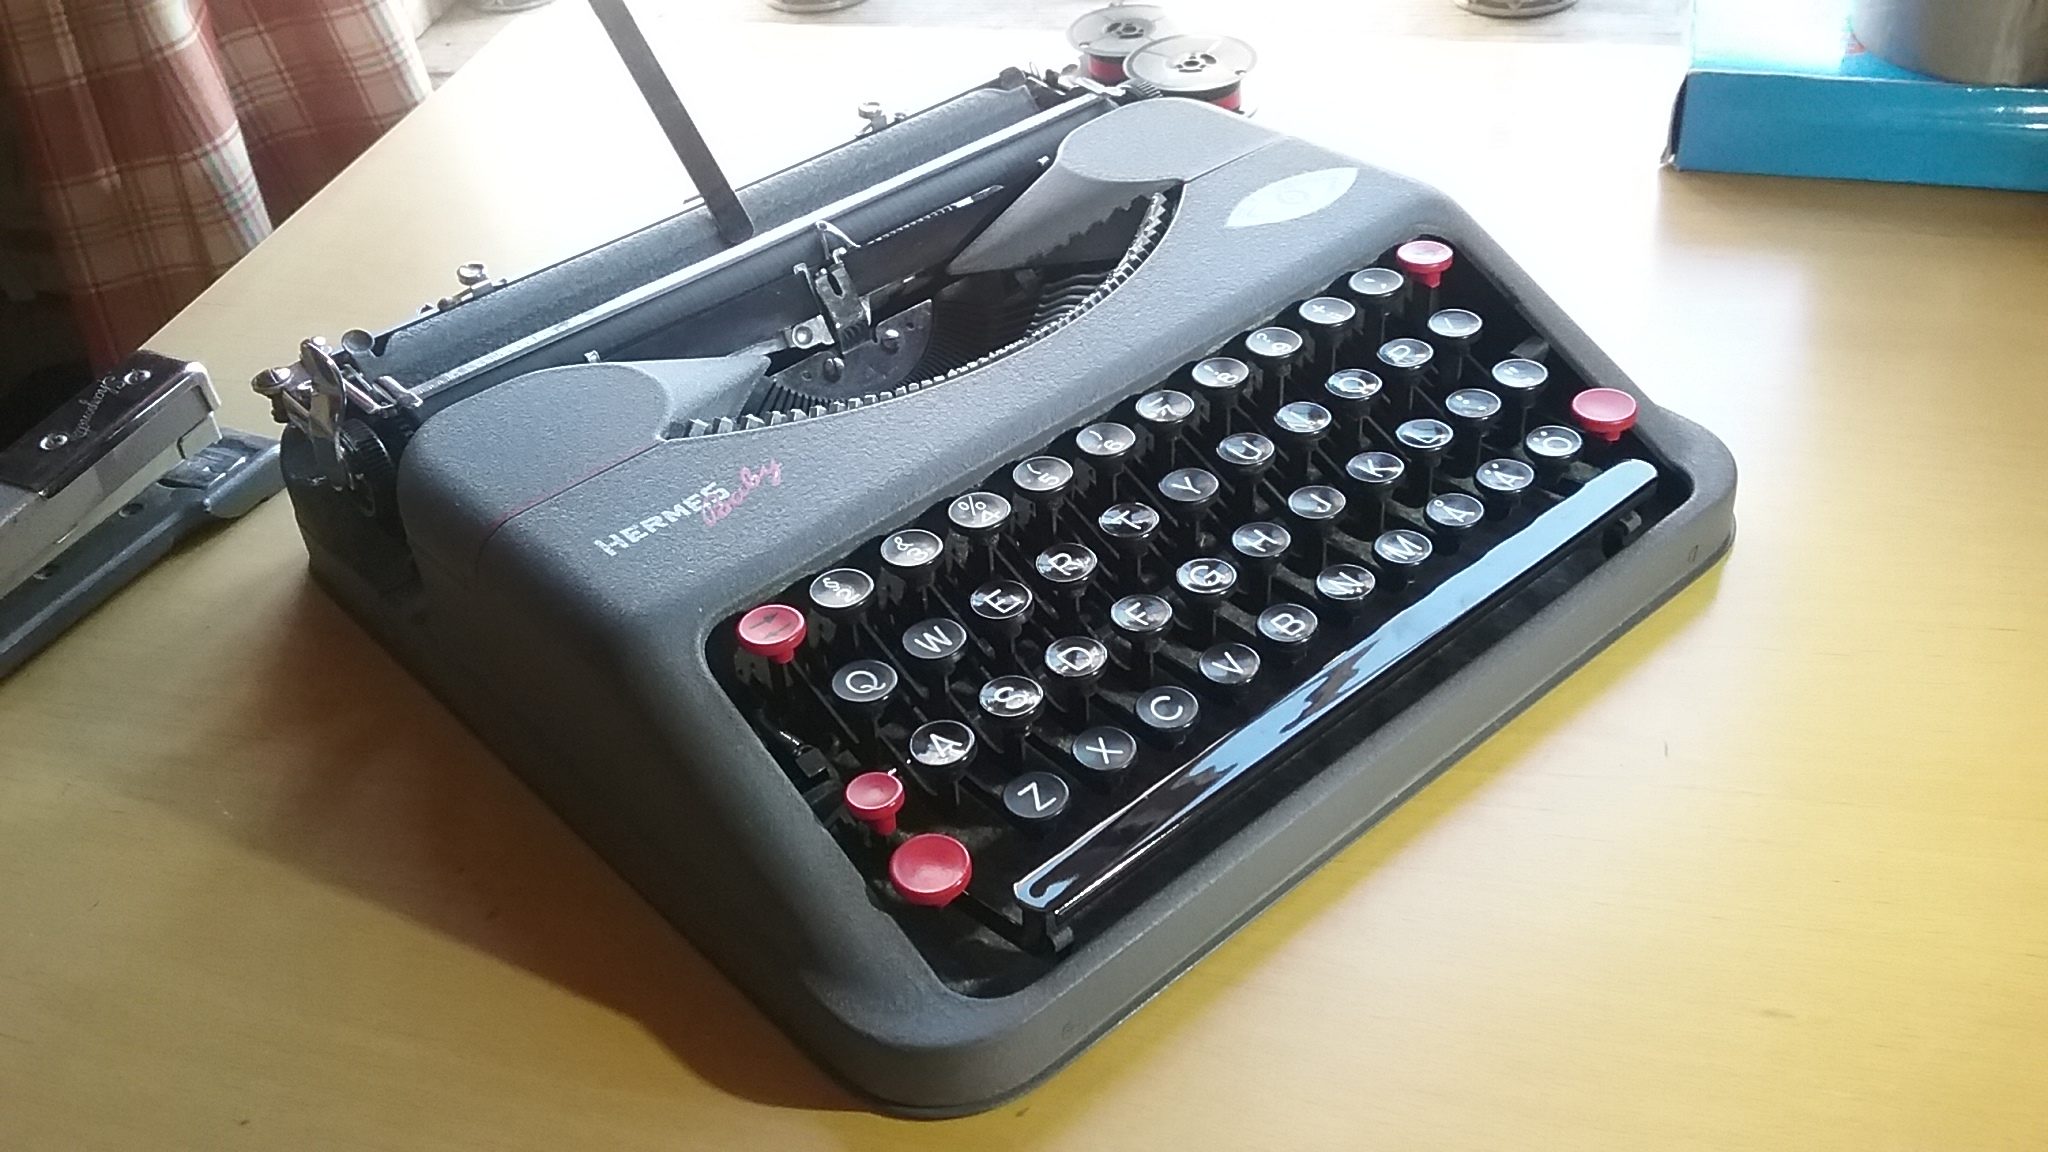 1944 Hermes Baby Typewriter In Case English- Switzerland Suisse E. Paillard Yverdon.